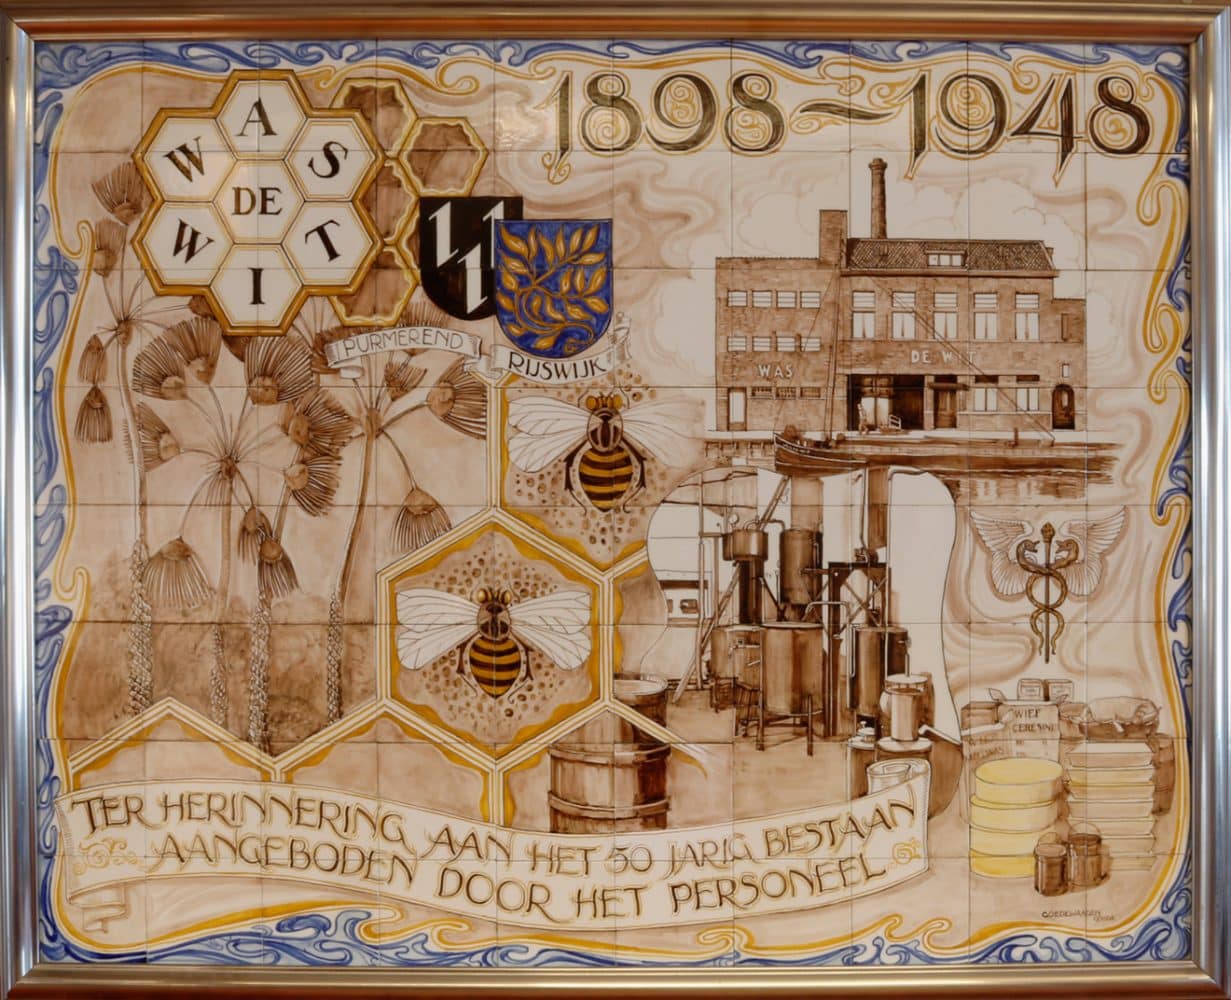 Was de Wit, bijenwasproducten, Geestbrugkade, 1948